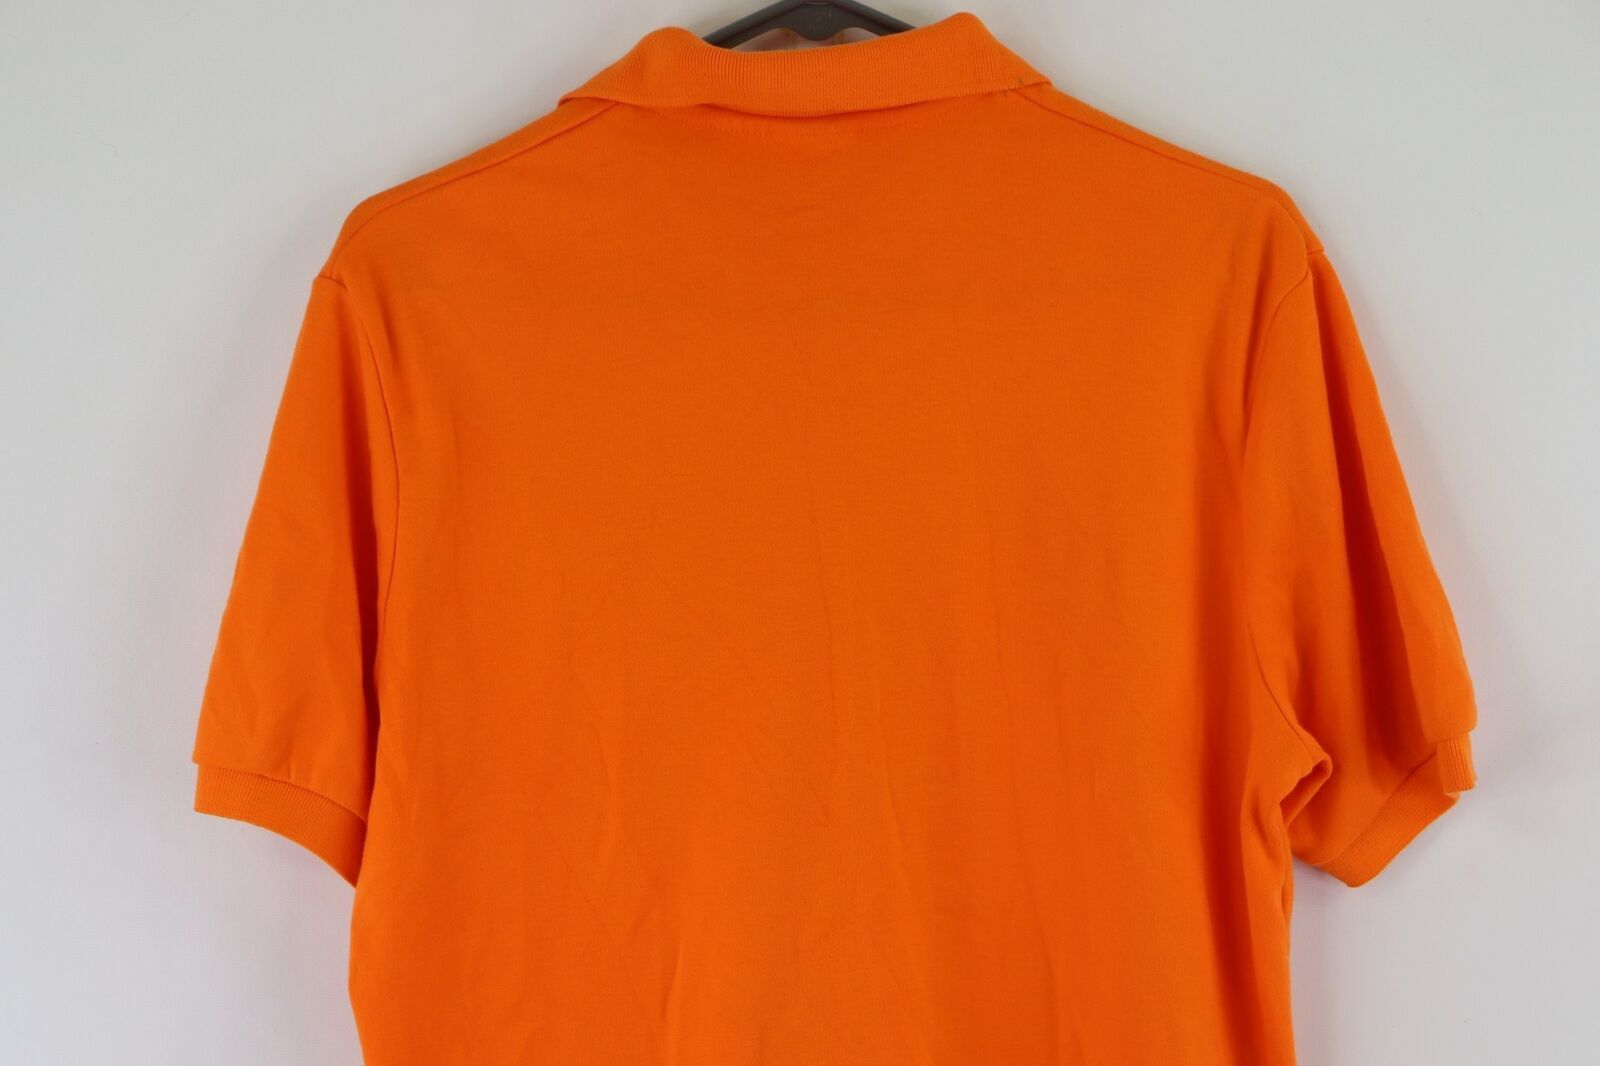 Nike Vintage 90s Nike Travis Scott Mini Swoosh Polo Shirt Orange Size US M / EU 48-50 / 2 - 6 Thumbnail